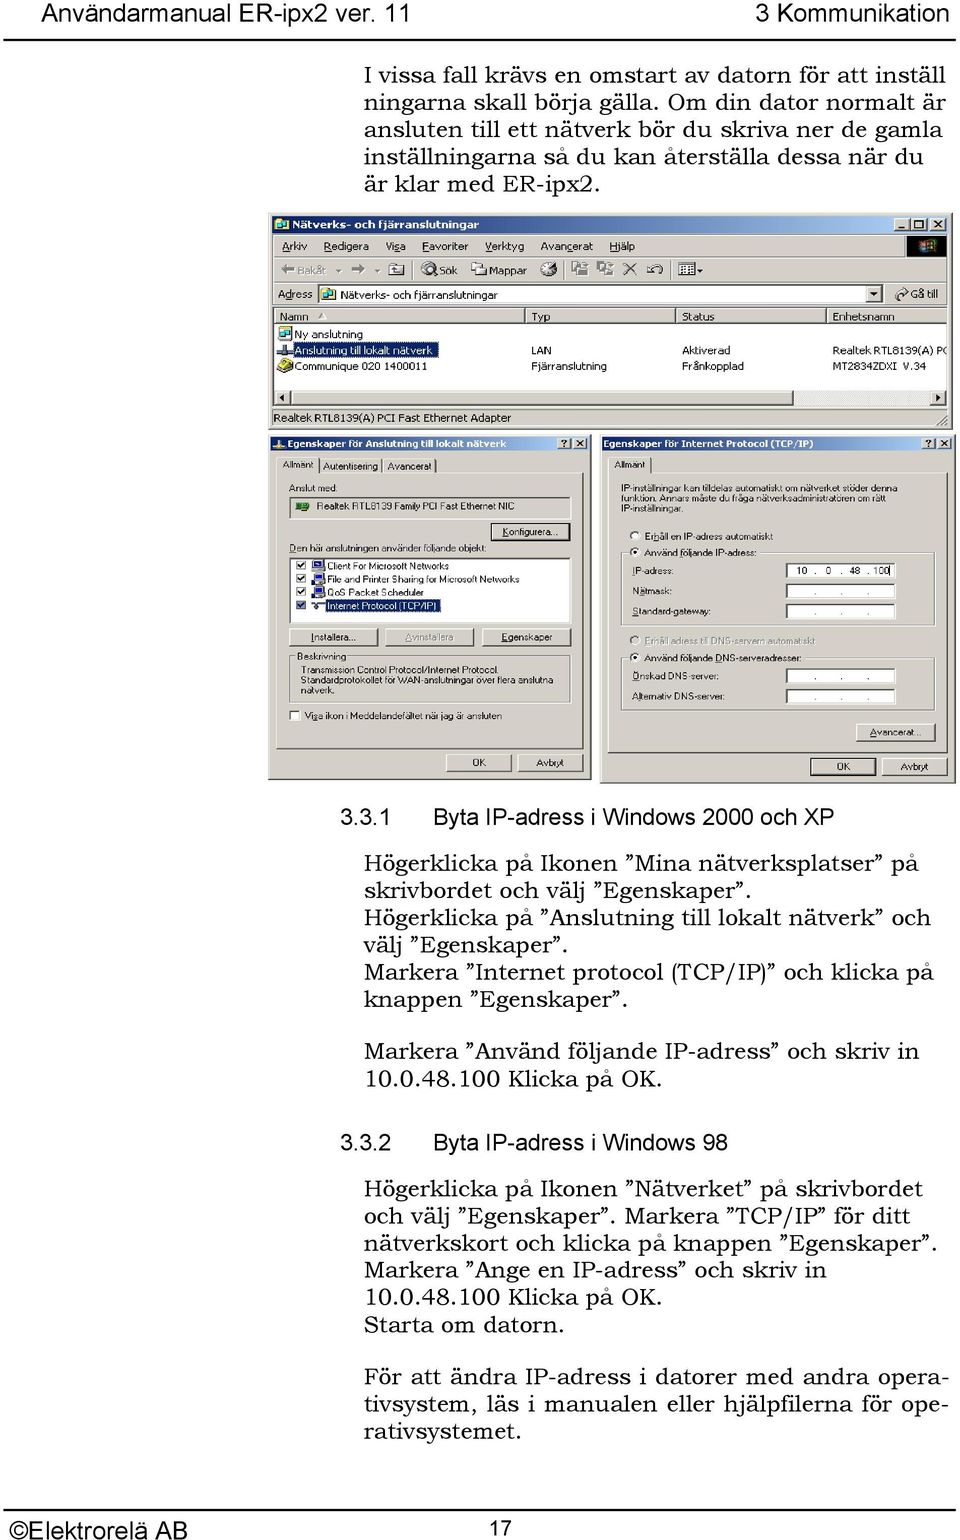 3.1 Byta IP-adress i Windows 2000 och XP Högerklicka på Ikonen Mina nätverksplatser på skrivbordet och välj Egenskaper. Högerklicka på Anslutning till lokalt nätverk och välj Egenskaper.